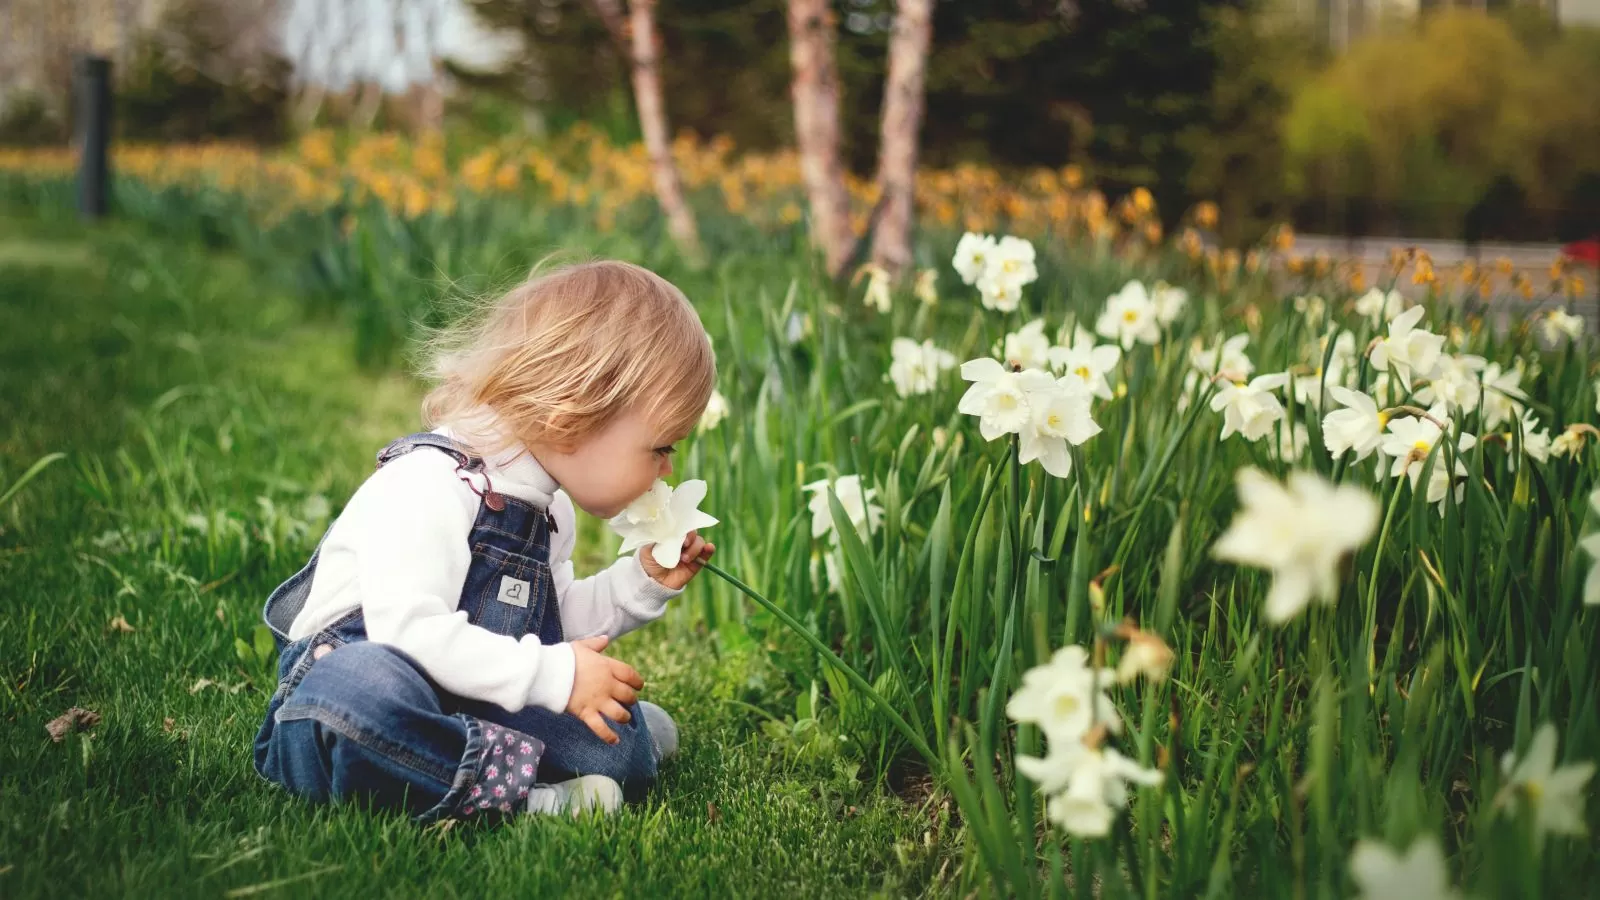 cute little girl smelling flower in a backyard garden